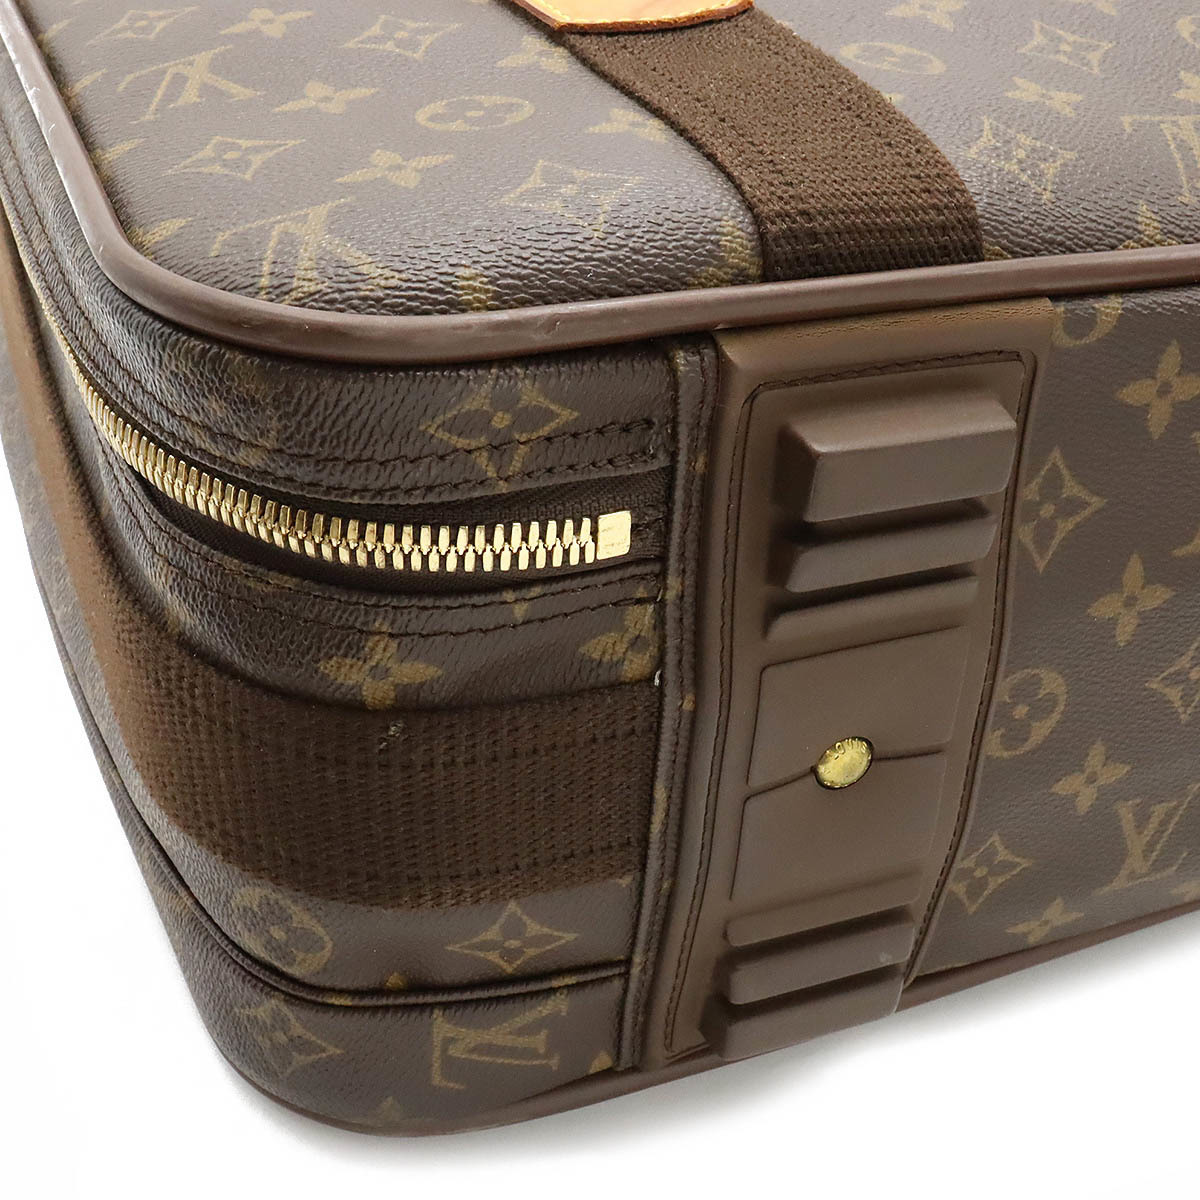 LOUIS VUITTON Louis Vuitton monogram satellite 53 suitcase travel bag travel bag 2WAY